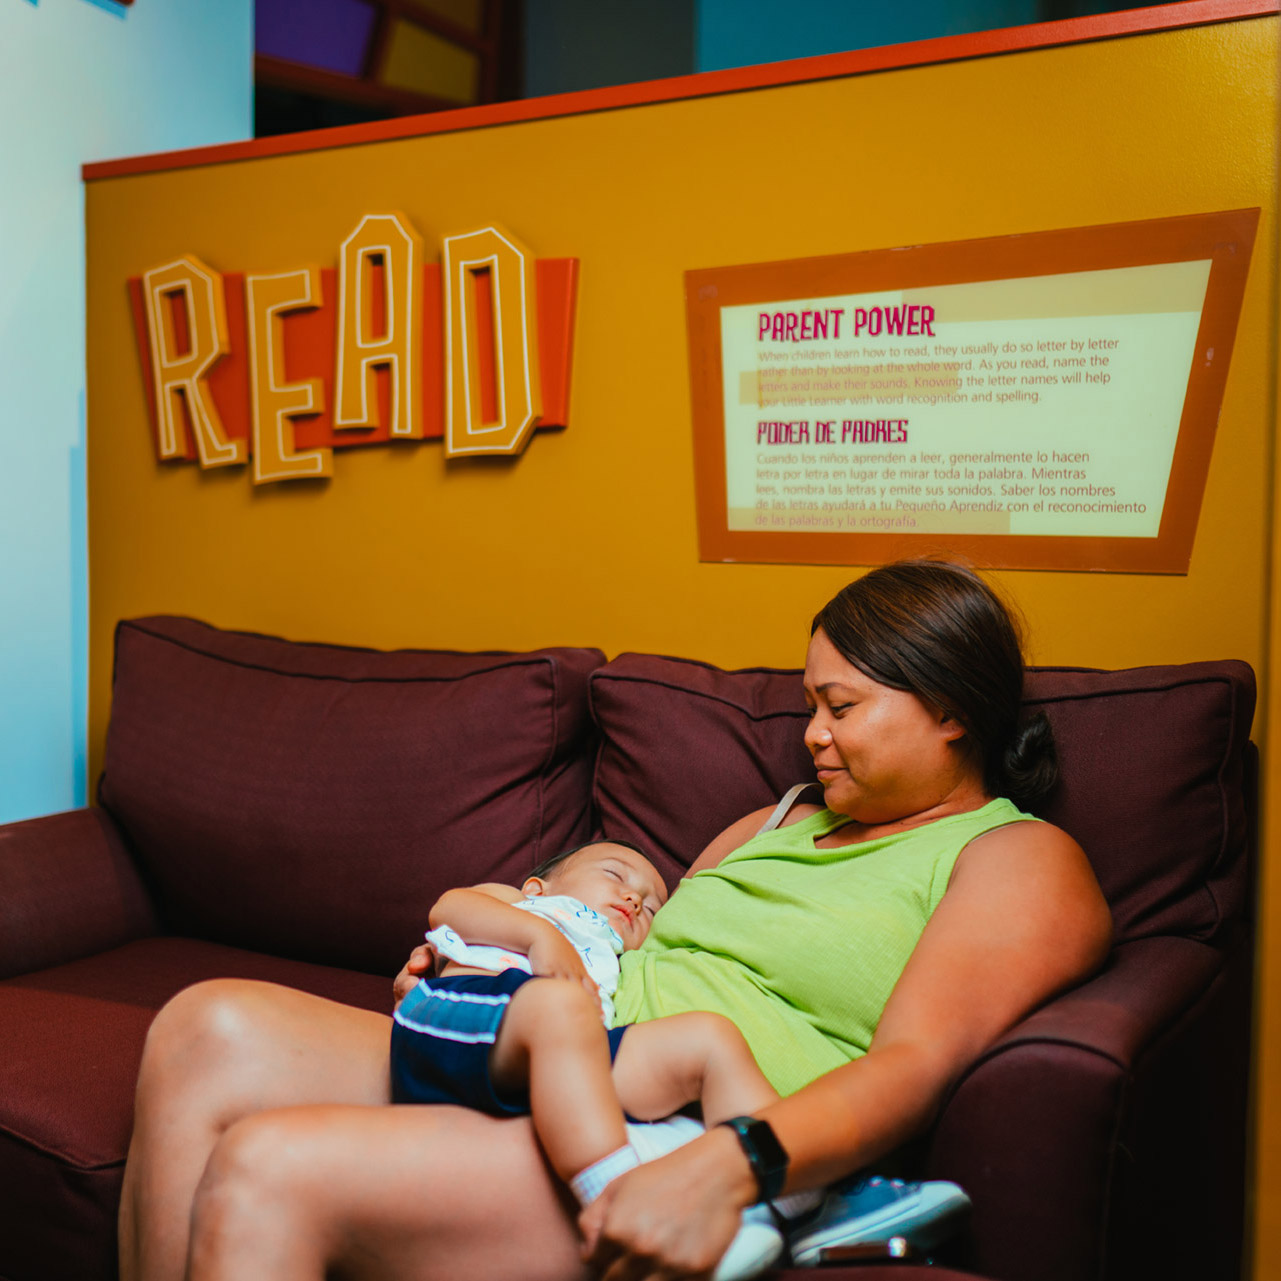 ディスカバリー・チルドレンズ・ミュージアムの &quot;read &quot;と書かれた看板の前で、ソファに座った女性が膝の上に寝ている幼児を抱いている。